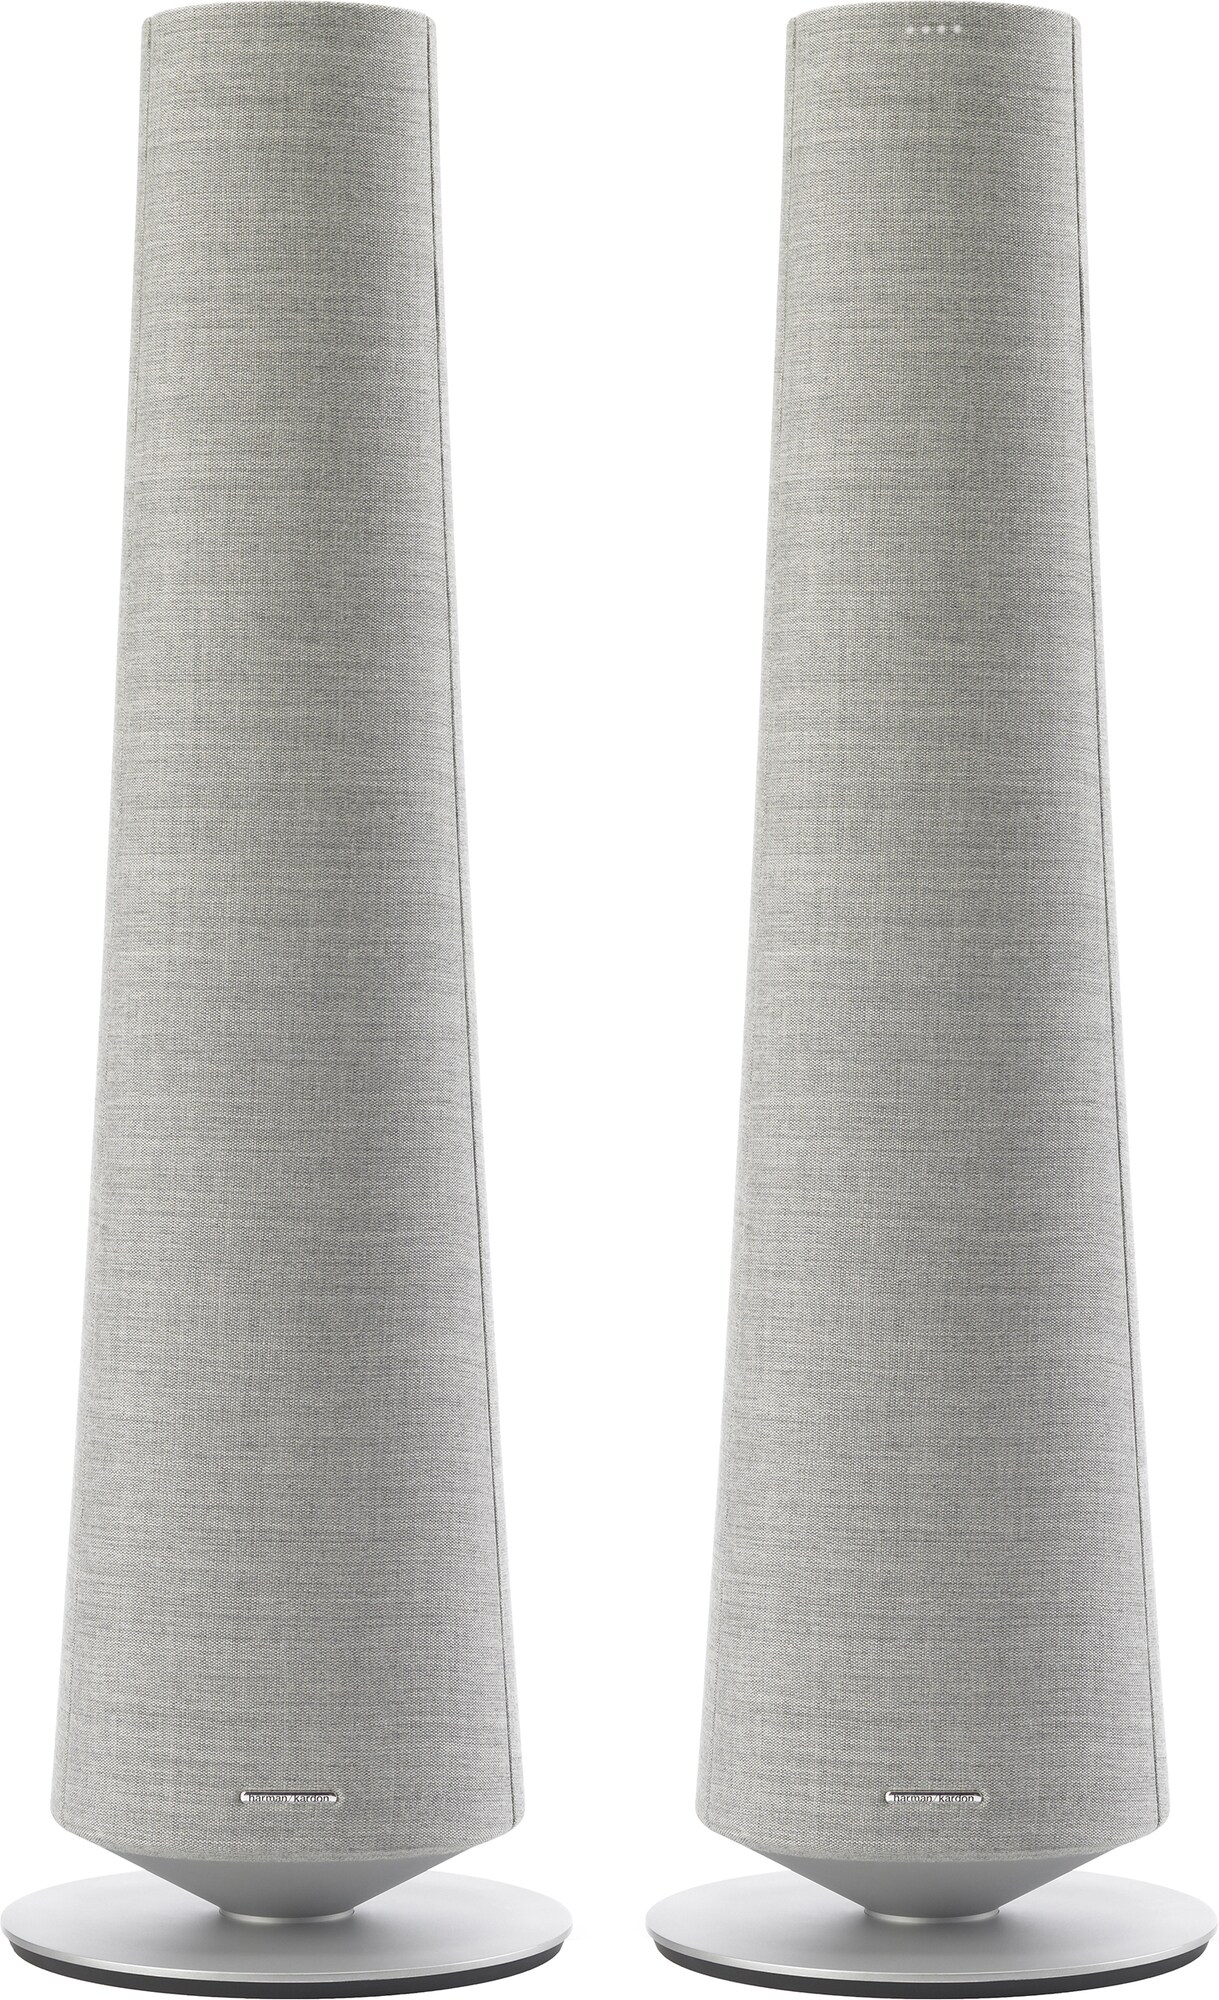 Harman Kardon Citation Tower hi-fi højttalere - par (grå) - Smart højttalere  - Elgiganten